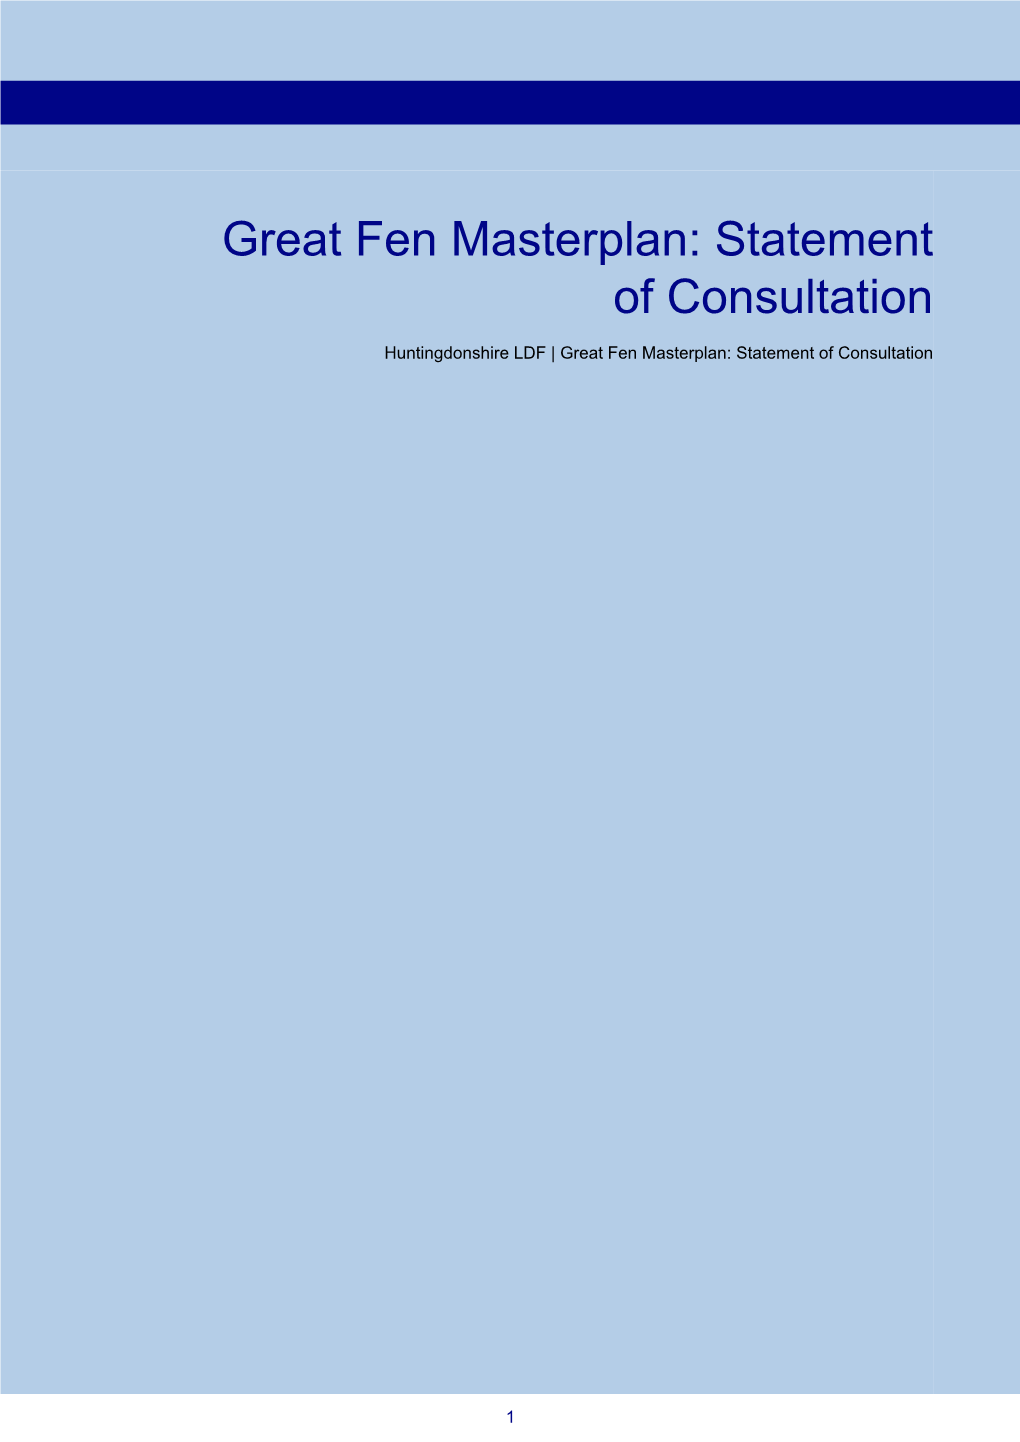 Great Fen Masterplan: Statement of Consultation